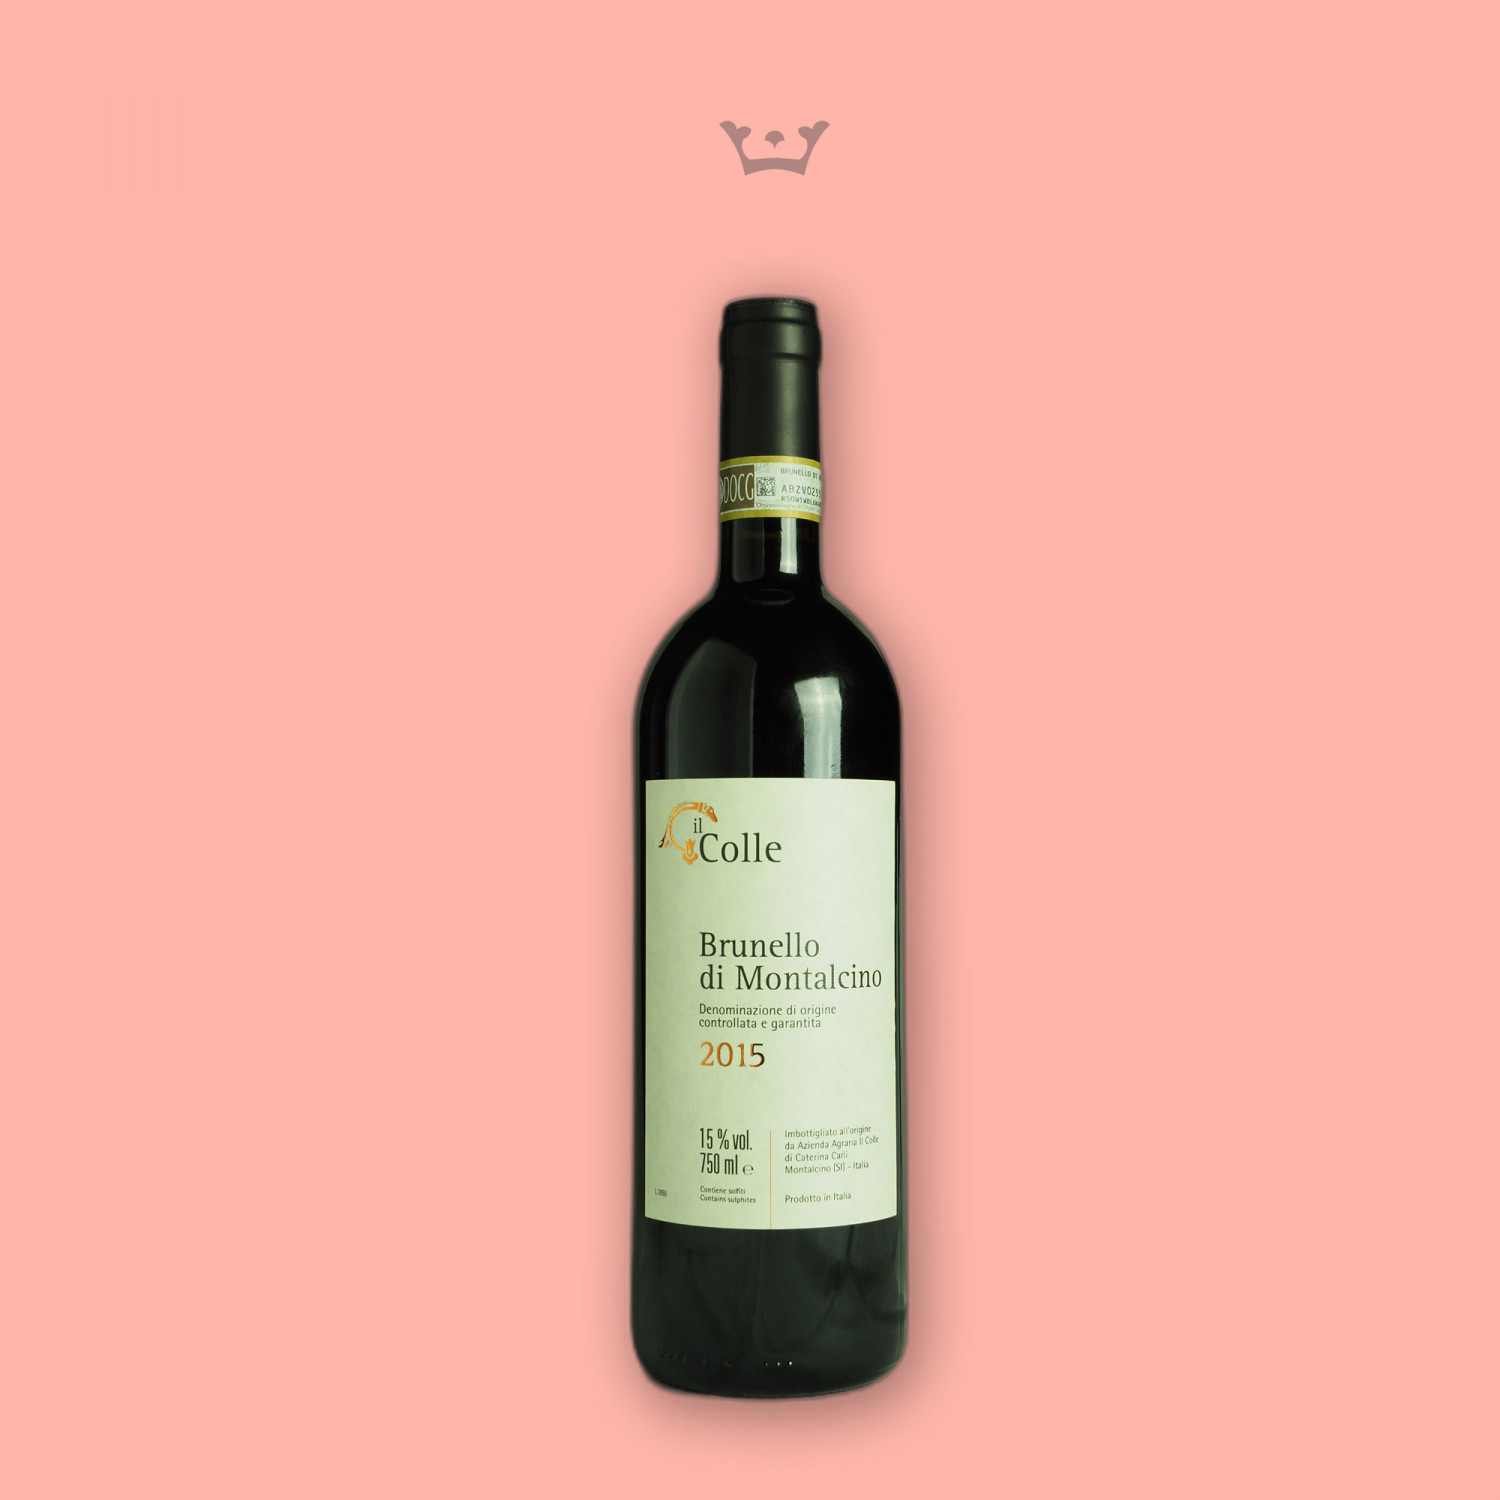 Bottiglia di vino Brunello di Montalcino Il Colle